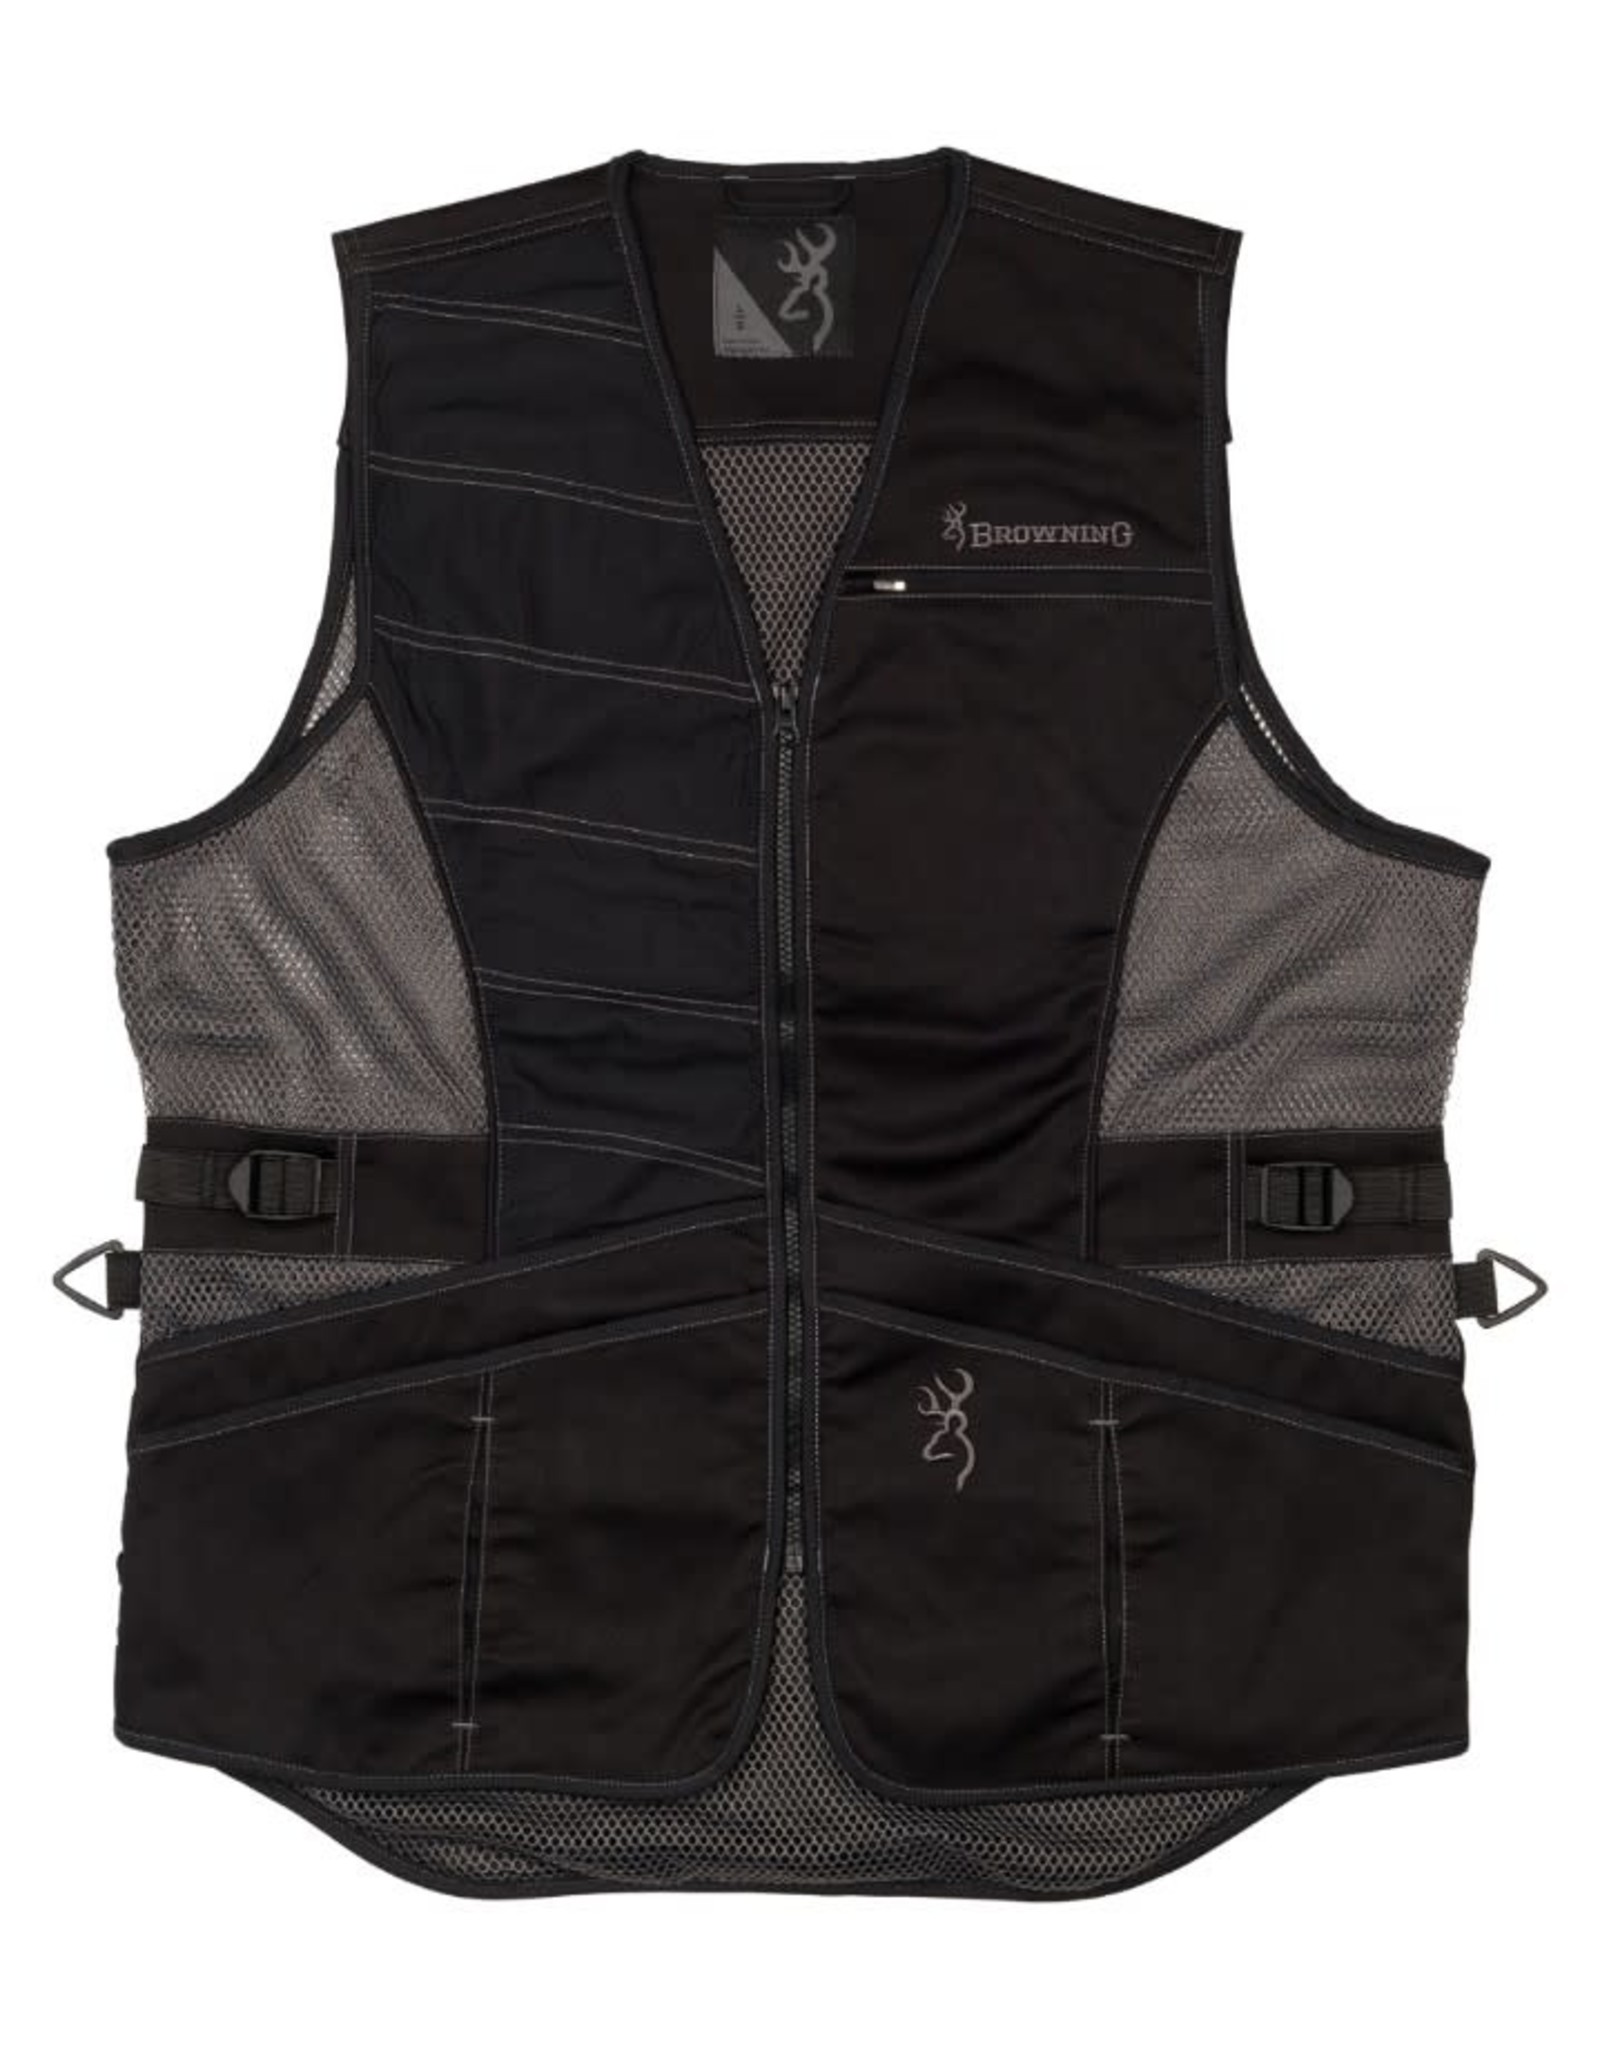 Browning Ace Shooting Vest - Black - MED